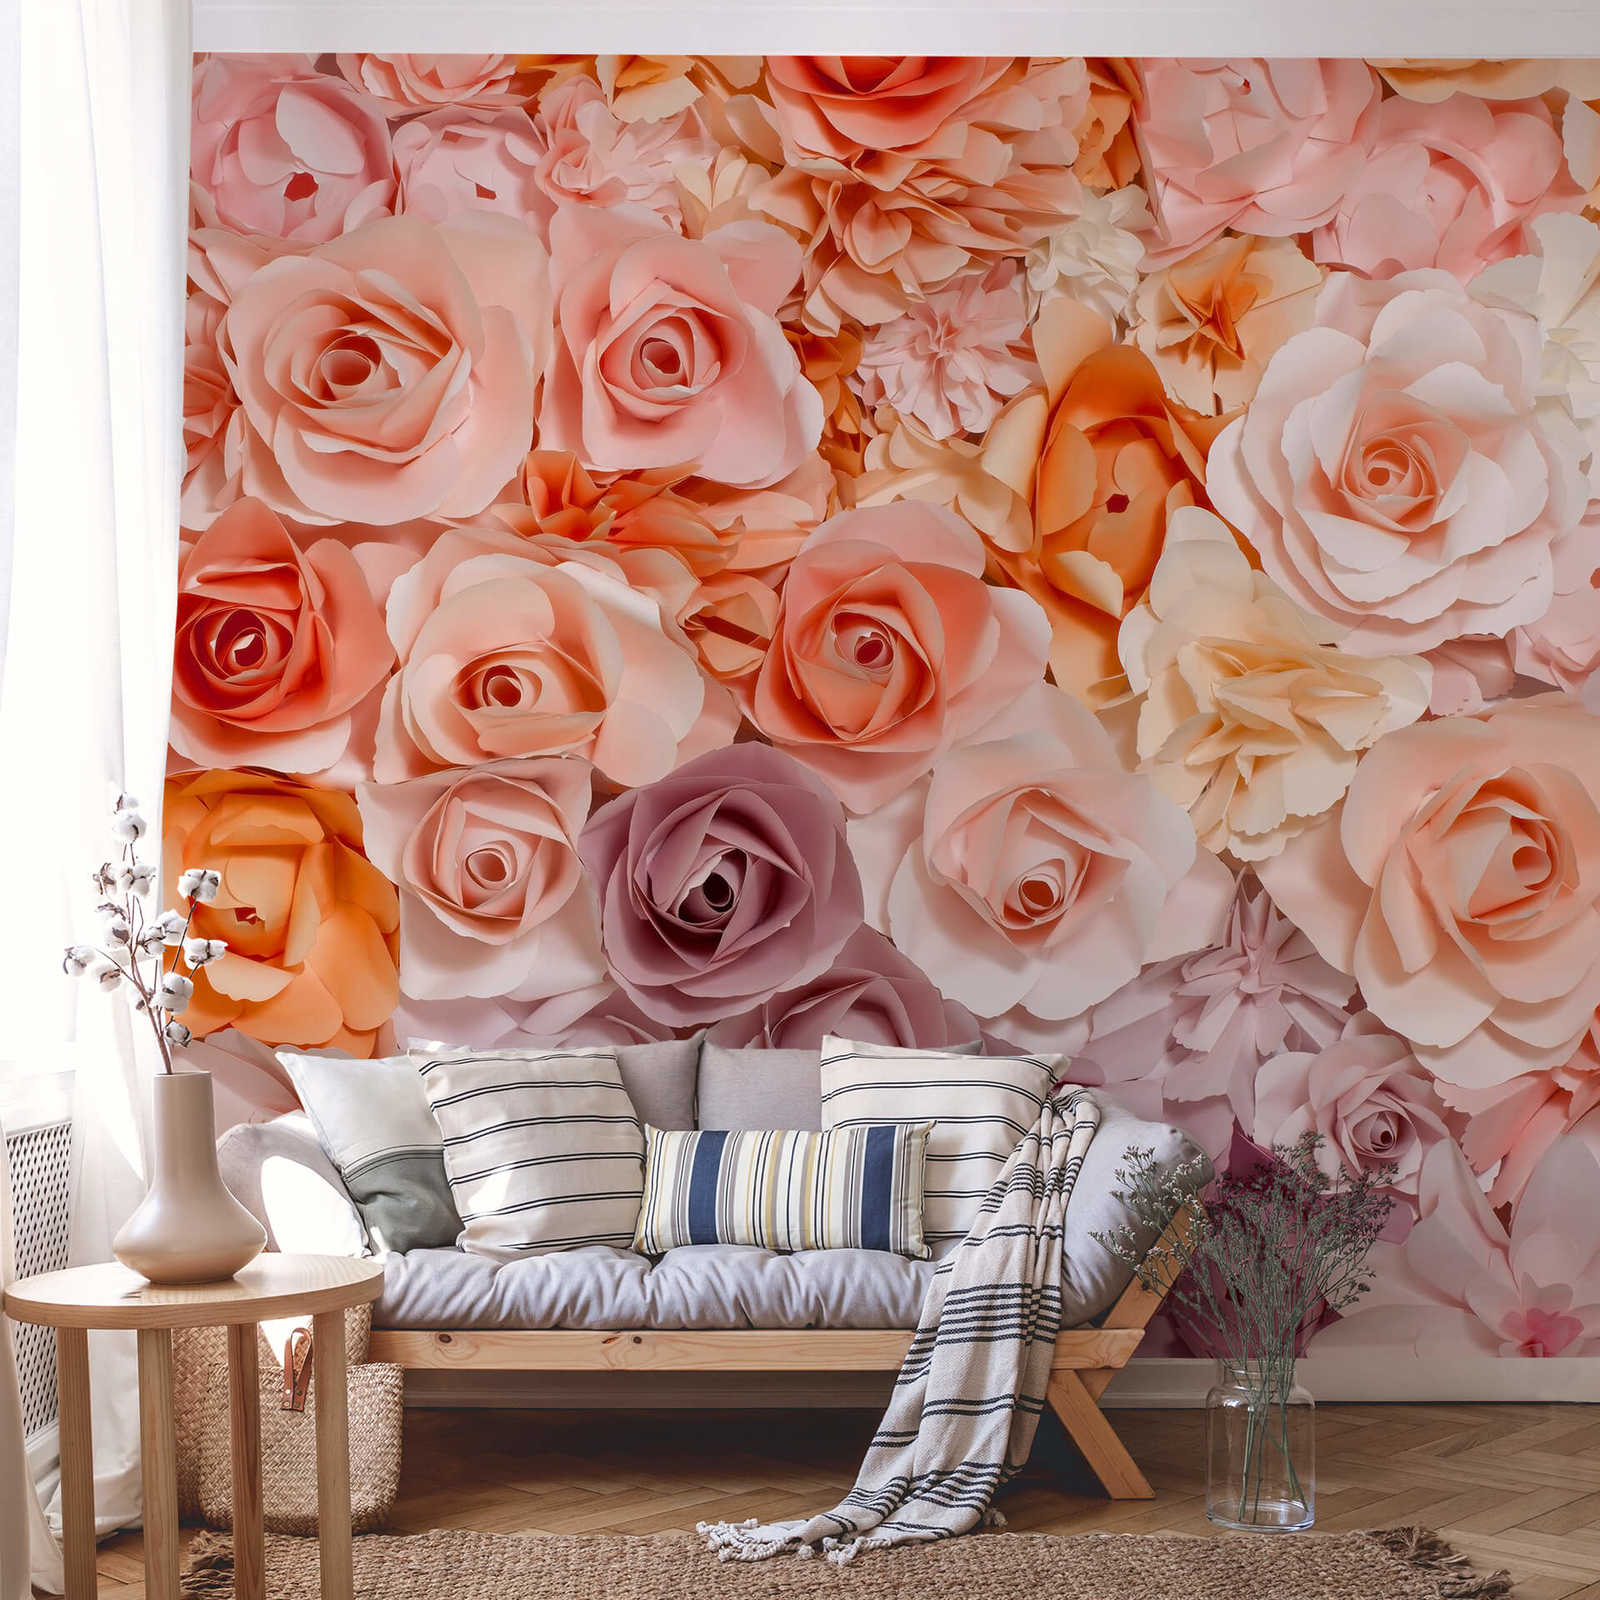             Roses Papier peint 3D motif fleurs - rose, blanc, orange
        